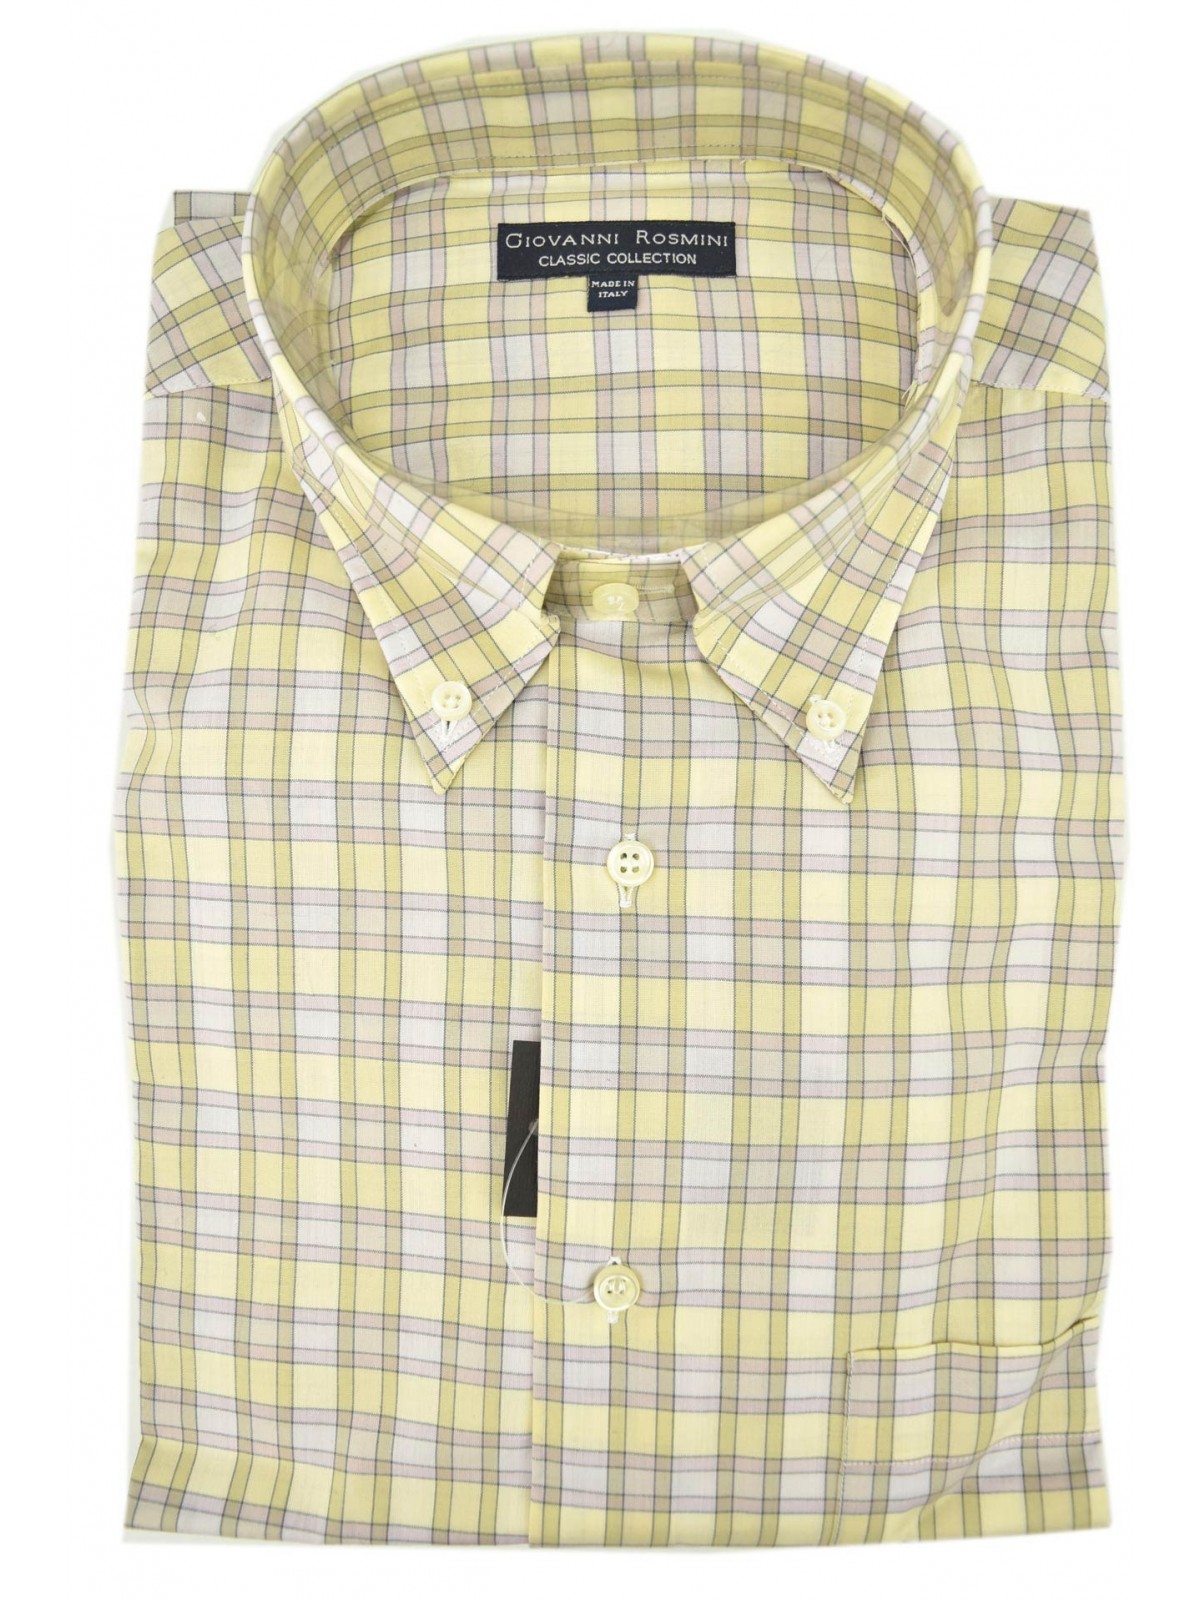 Shirt für Herren, Klassische hellgelb Karo Flieder Button Down-Kragen Popeline Baumwolle mit Brusttasche, t-Shirts